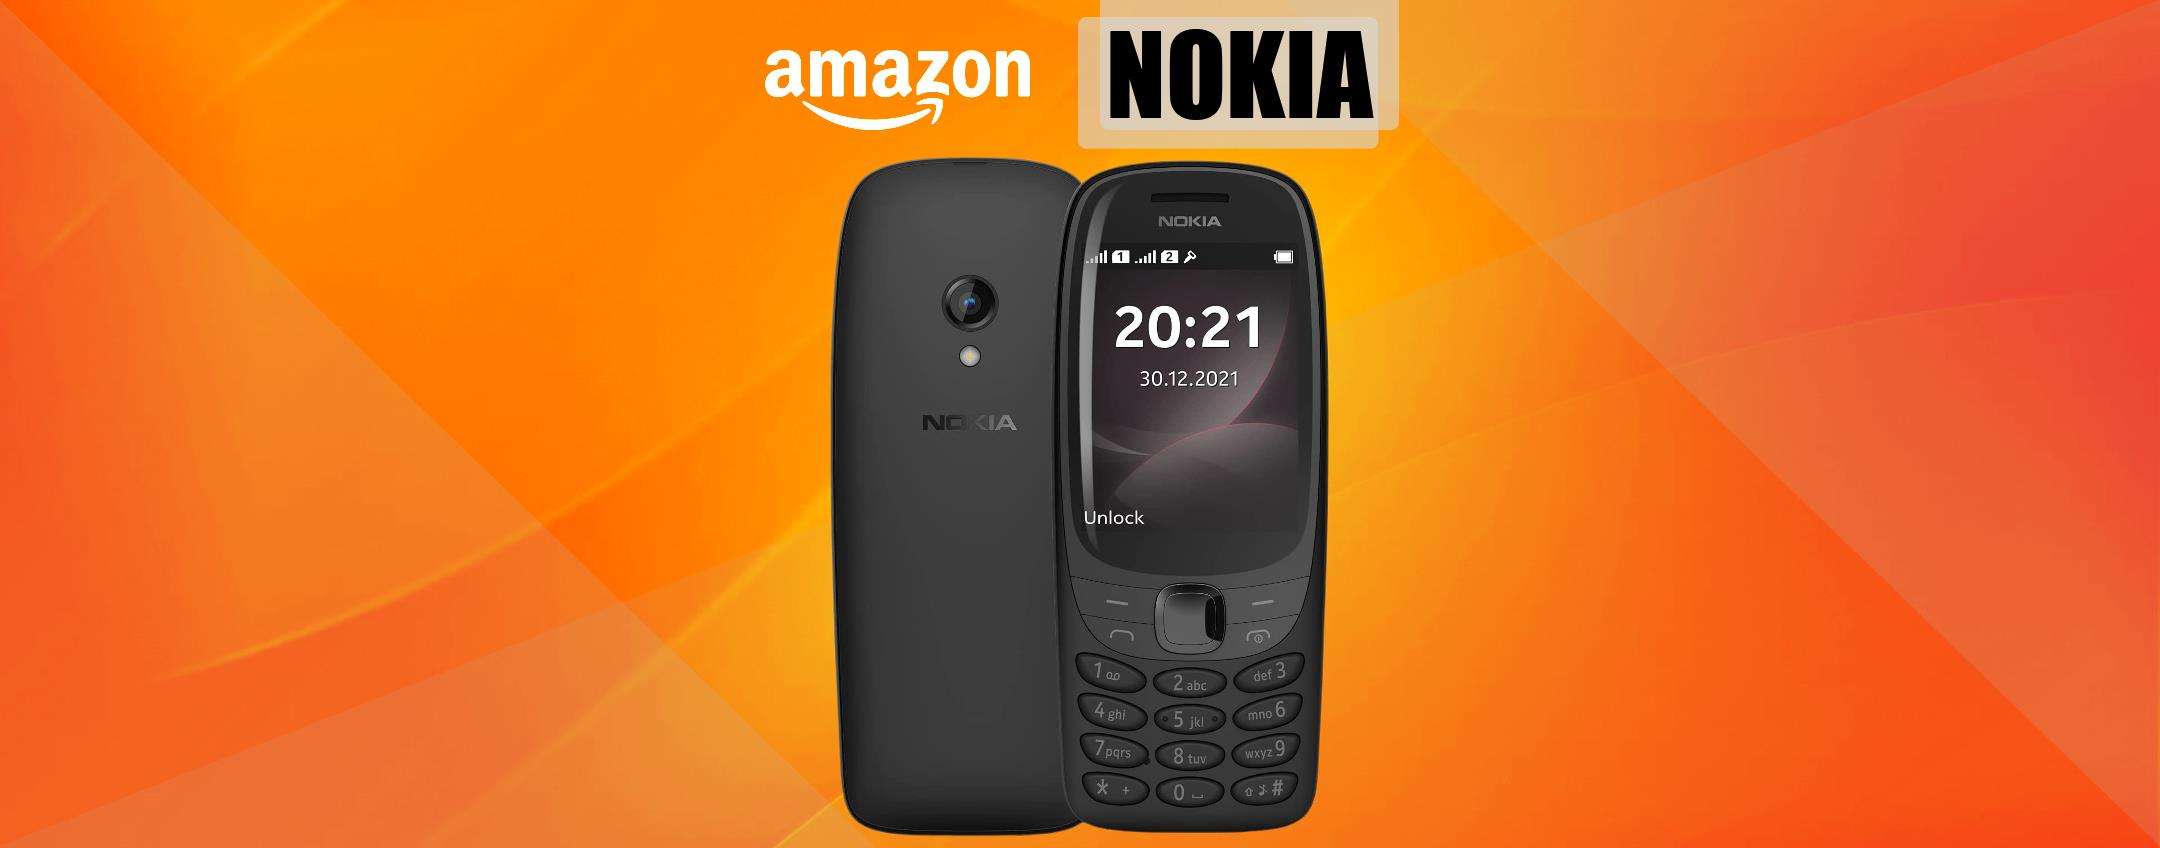 Nokia 6310: il cellulare più amato torna su Amazon ad appena 52€